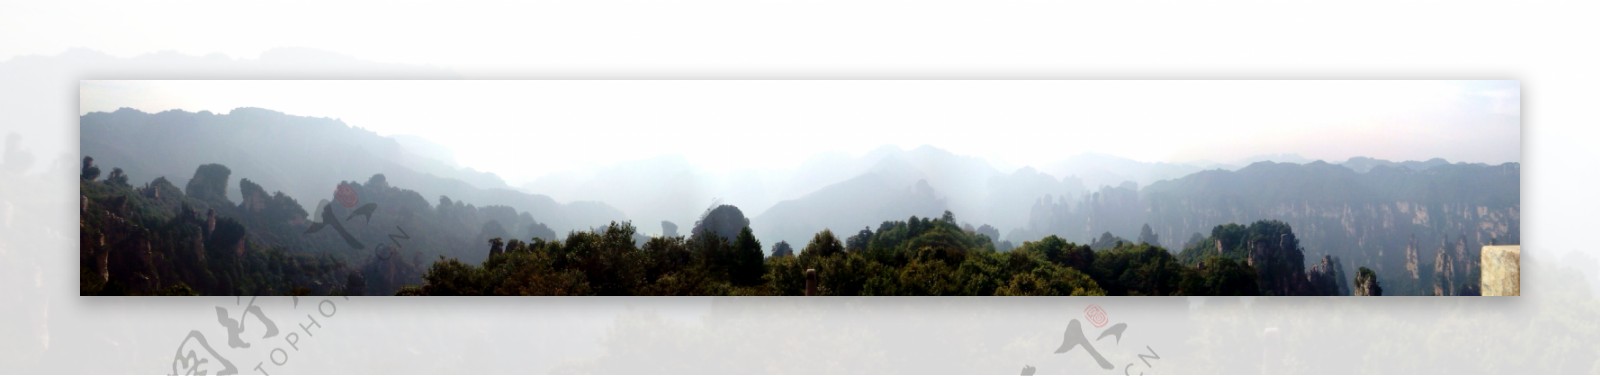 湖南山景图片